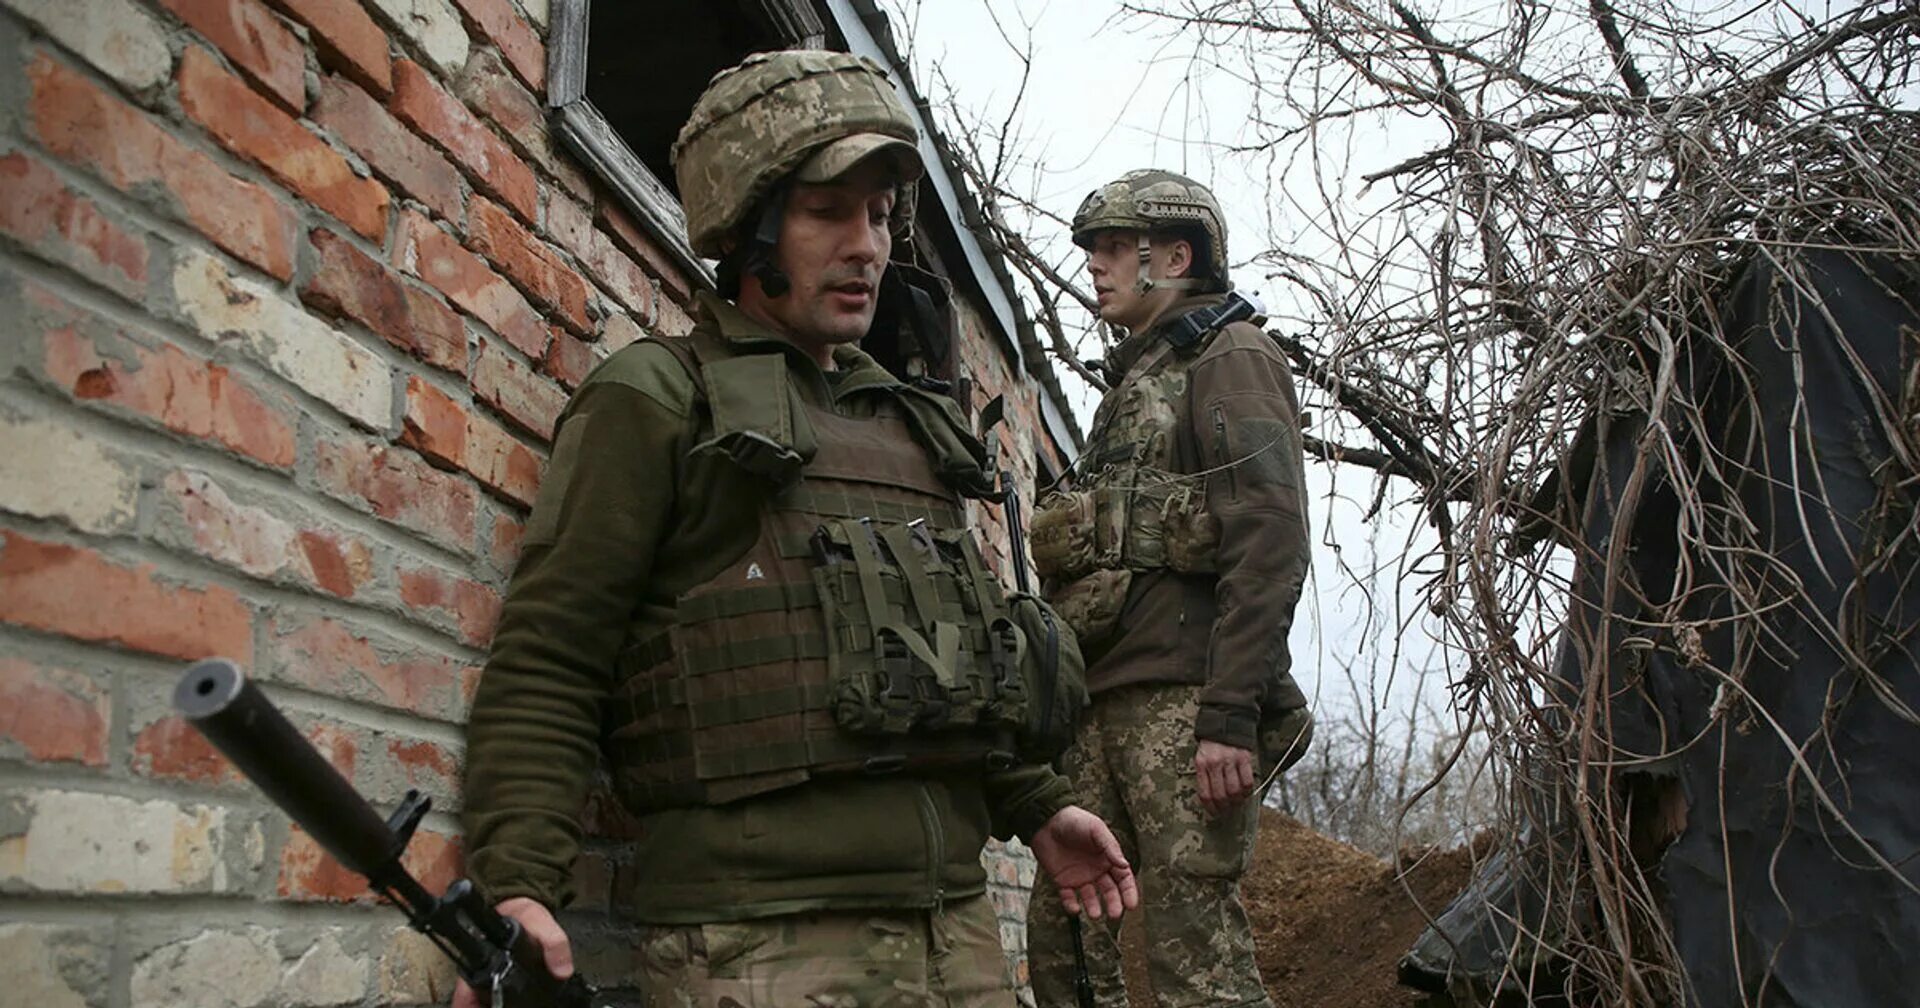 Последние новости про войну с украиной сегодня. Военные союзники Украины.